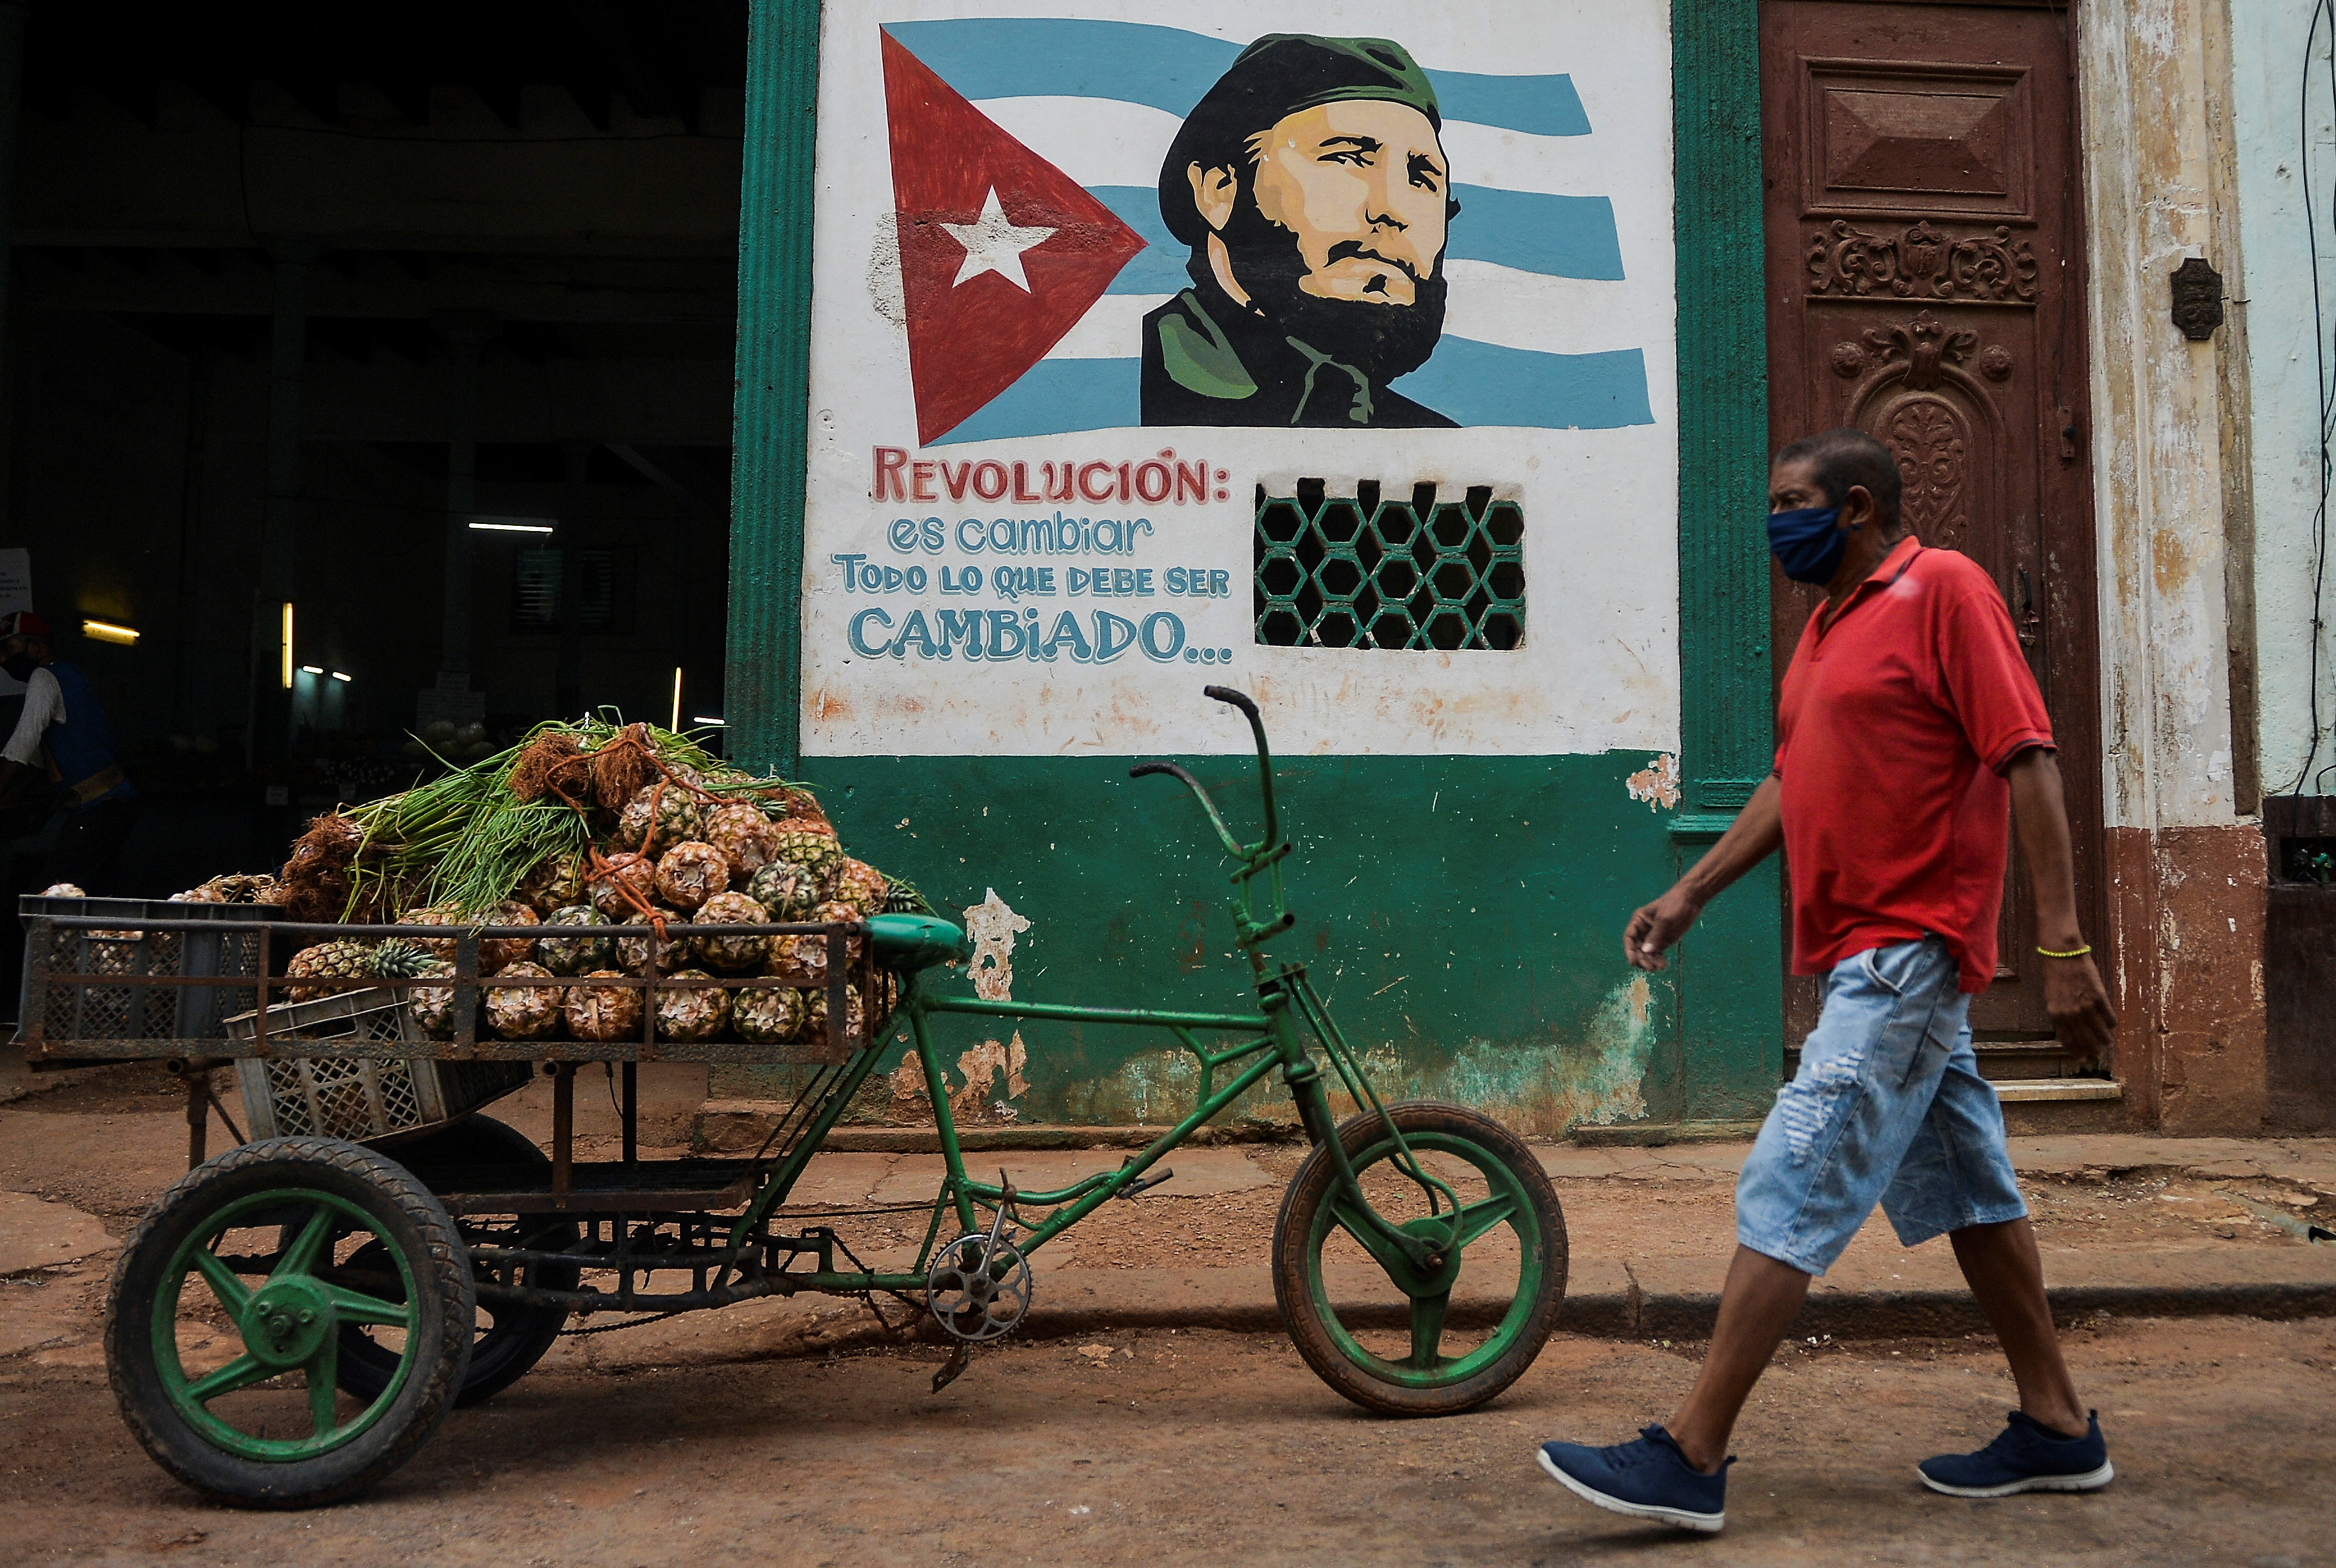 Cuba y Estados Unidos: Enfoques y resultados distintos frente a la Pandemia